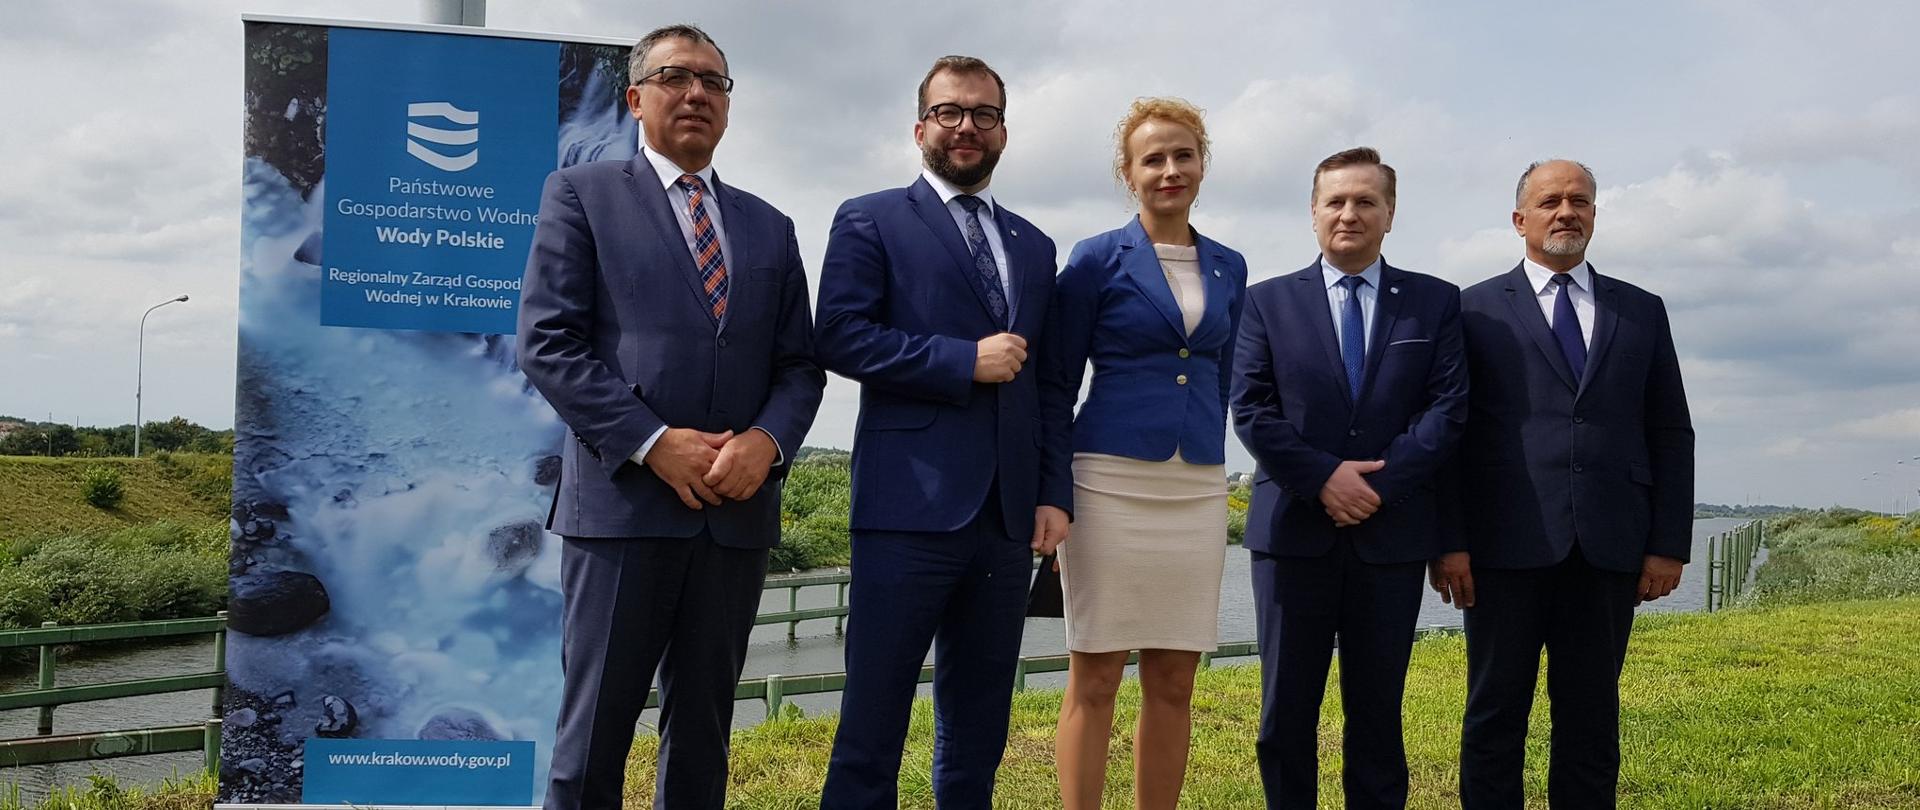 Minister Puda stoi z czterema pozostałymi uczestnikami spotkania, w tle płynie rzeka, za prelegentami stoi ścianka promująca "Wody Polskie". 